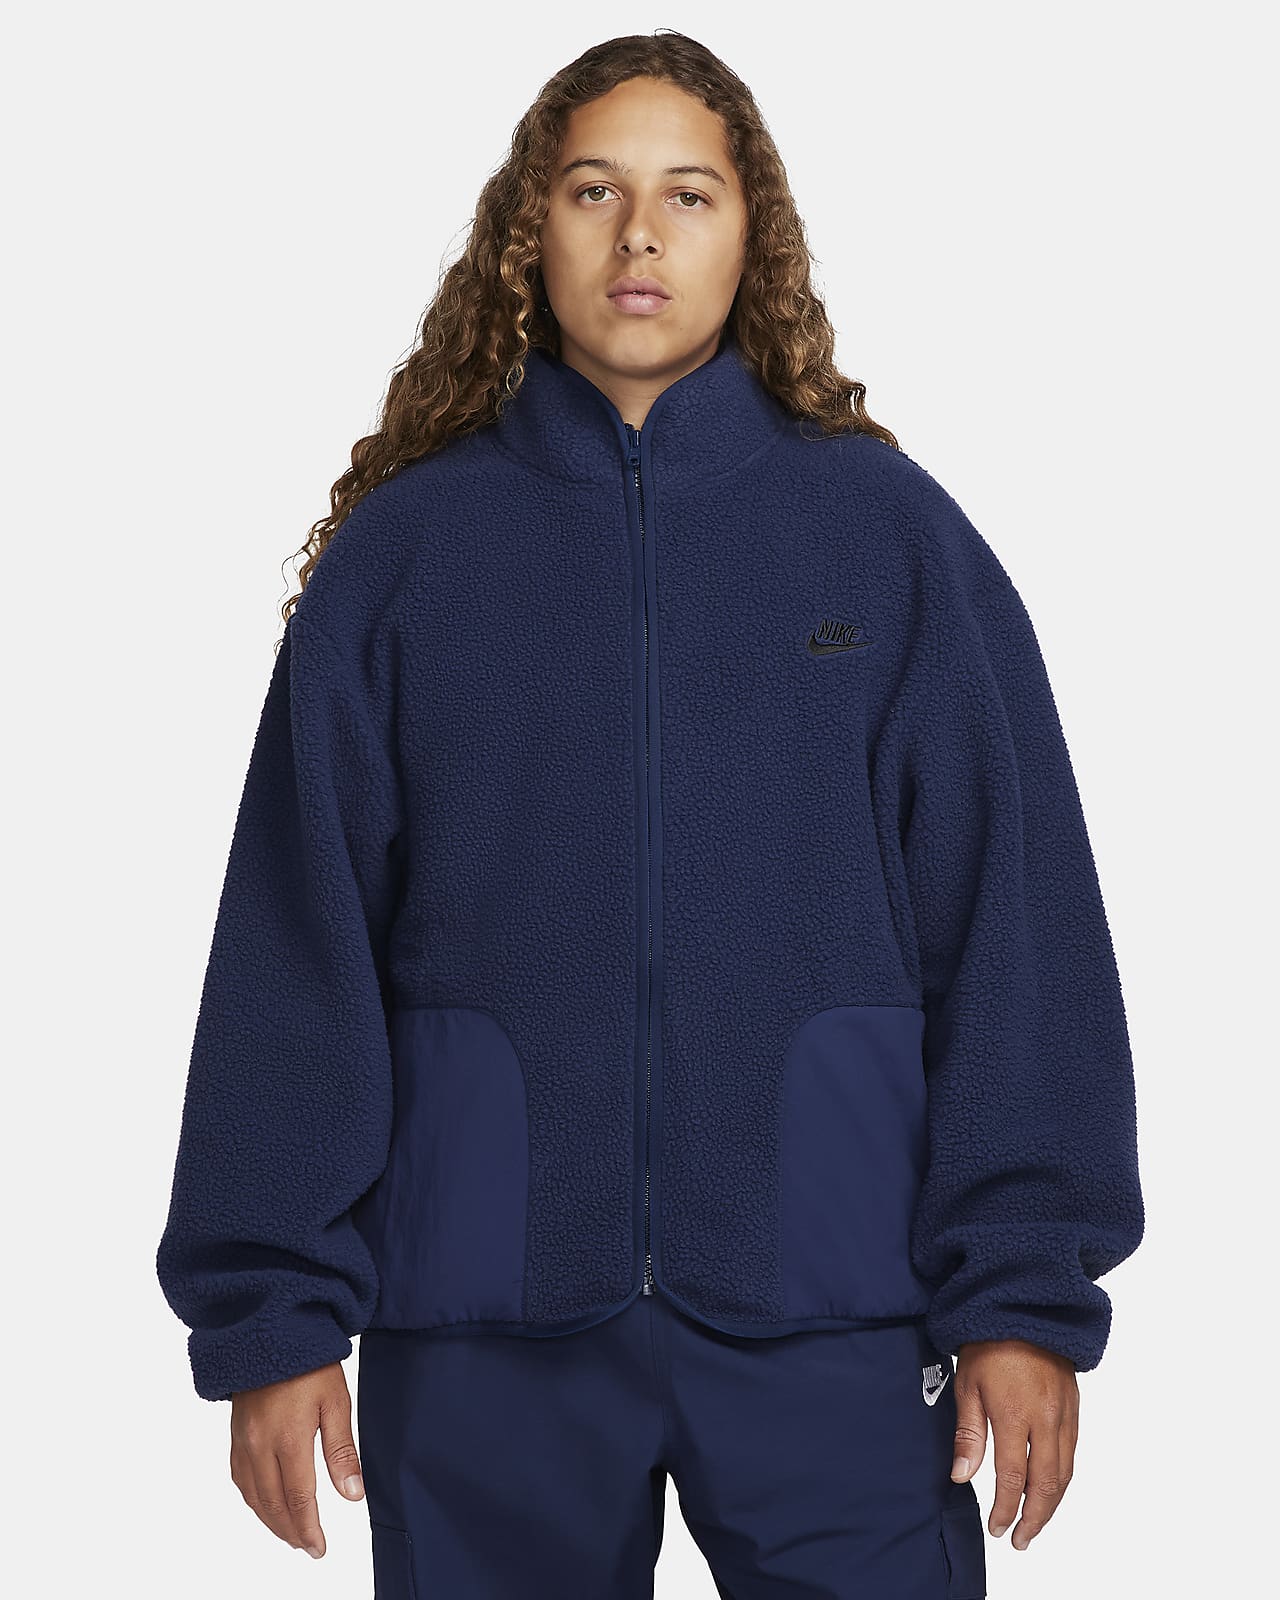 Nike Club Fleece Men's Winterized Jacket.